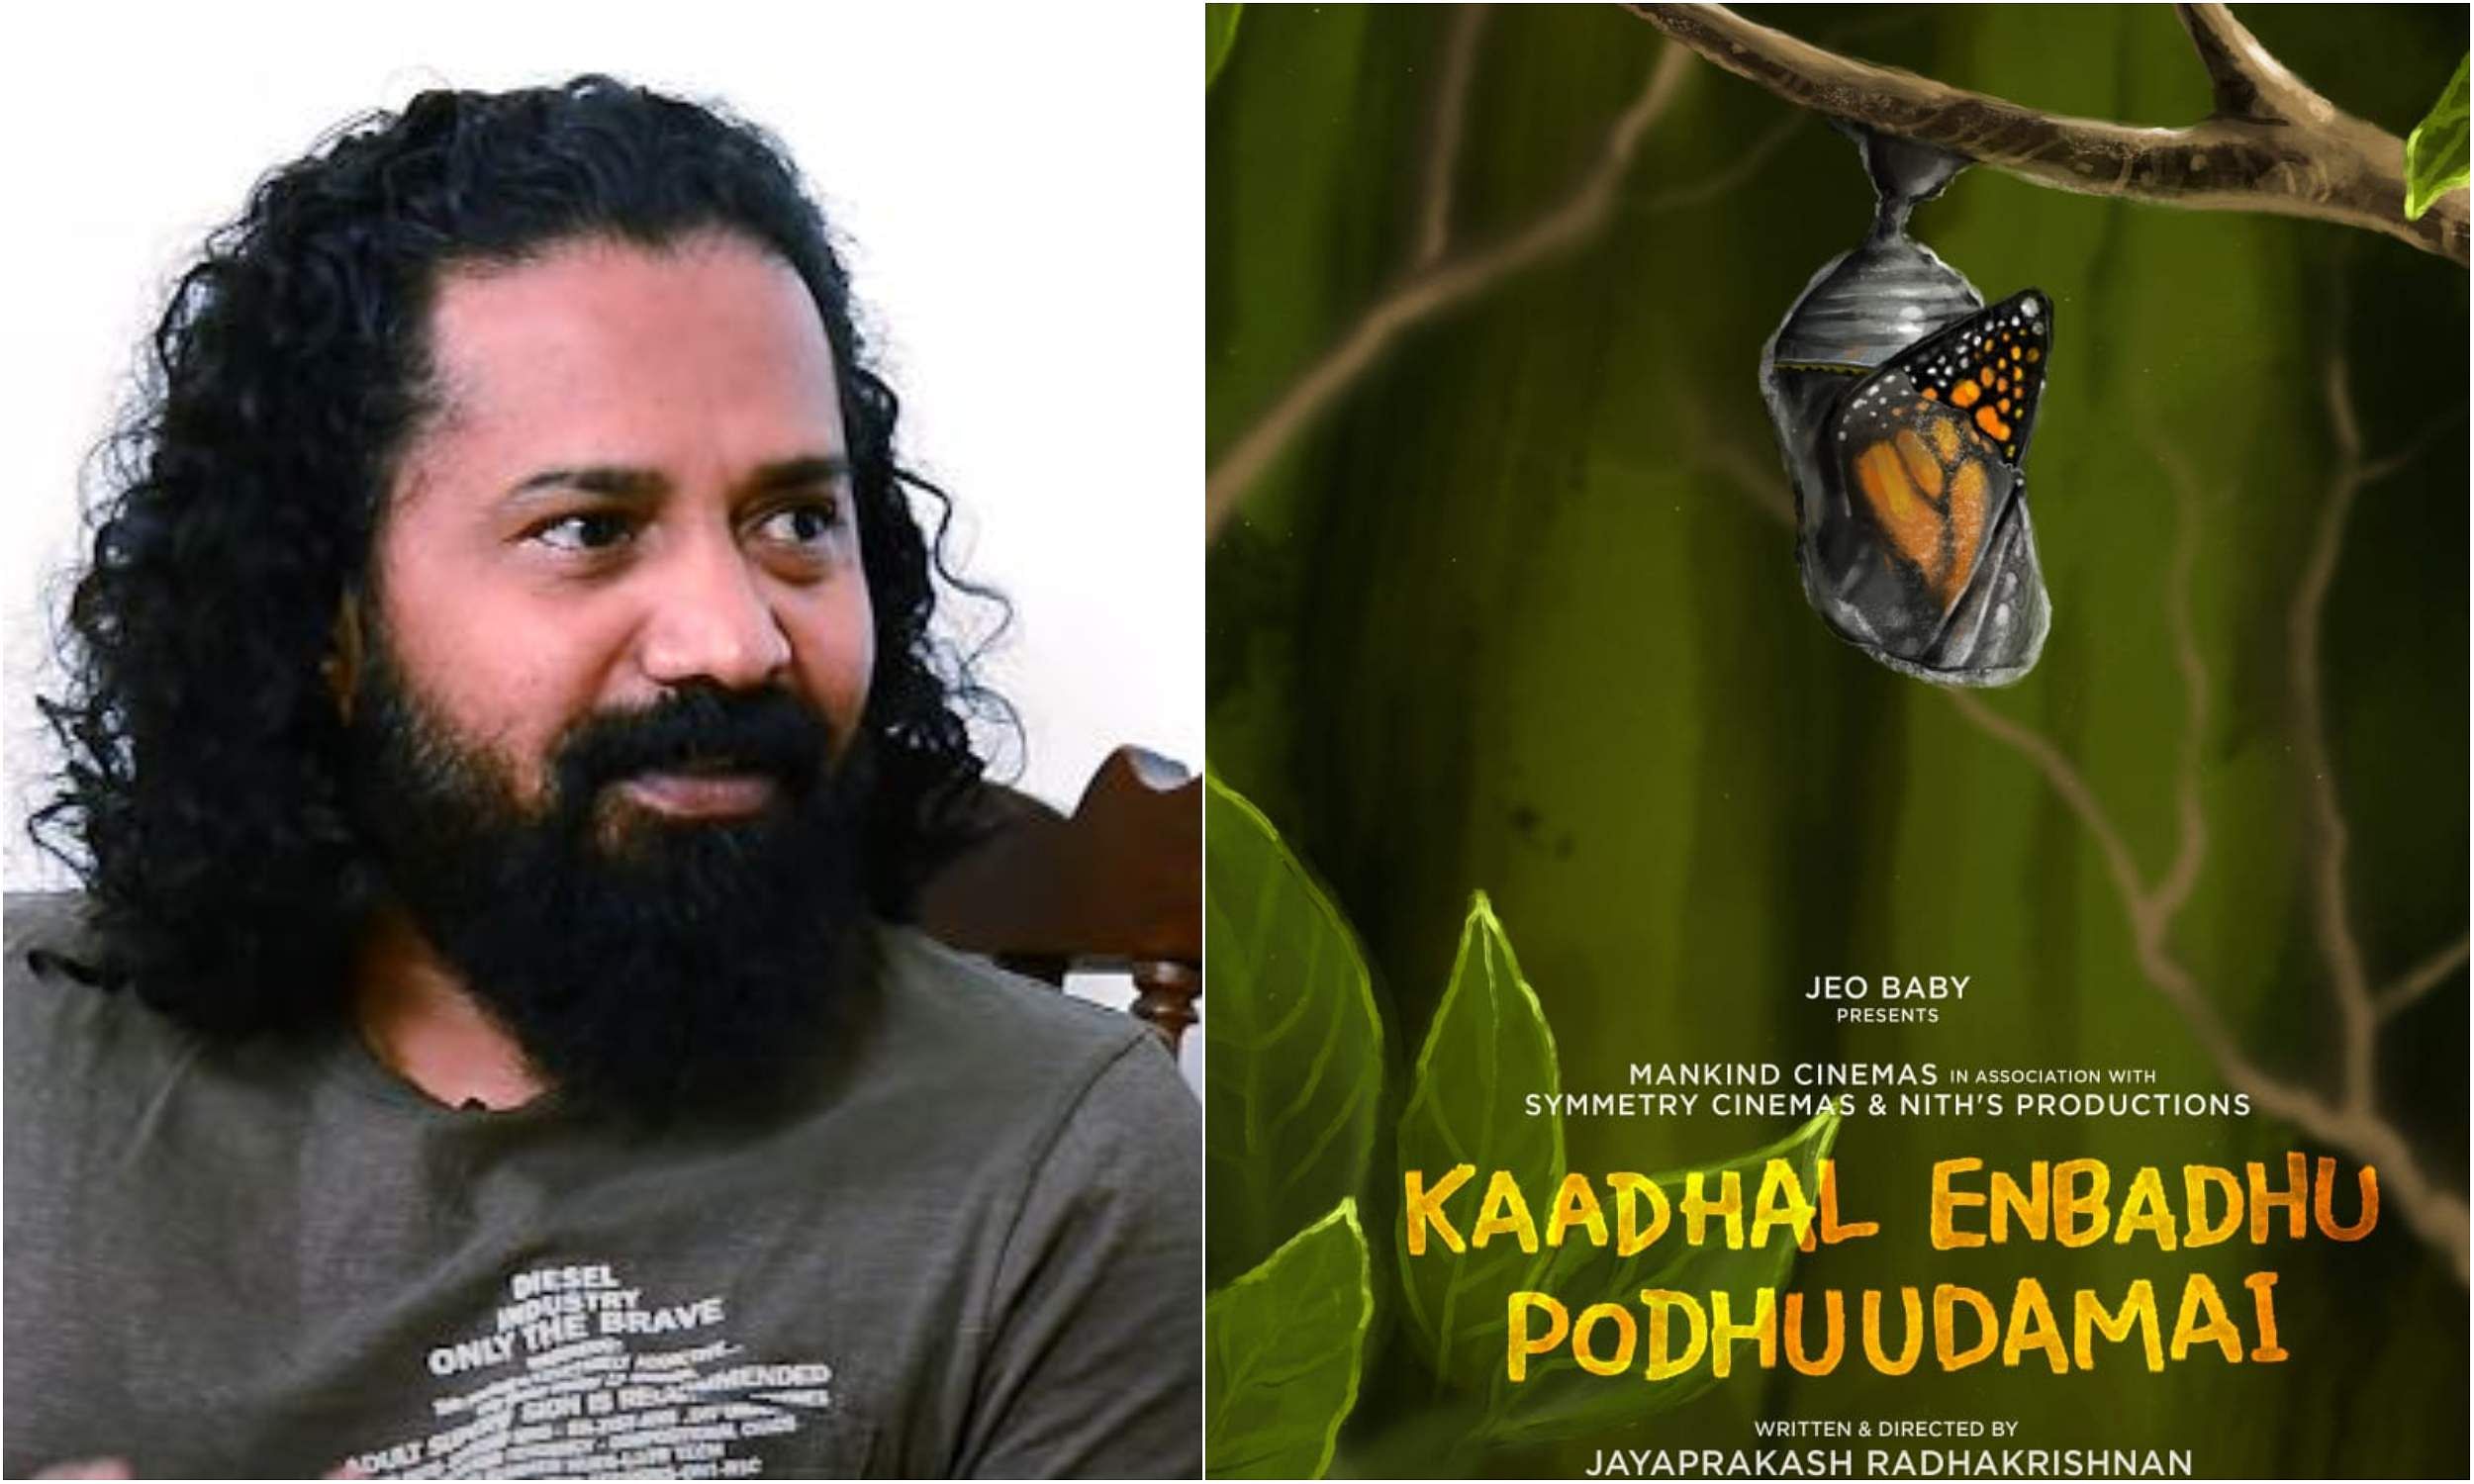 Jayaprakash Radhakrishnan's next titled Kadhal Enbadhu Podhuudamai